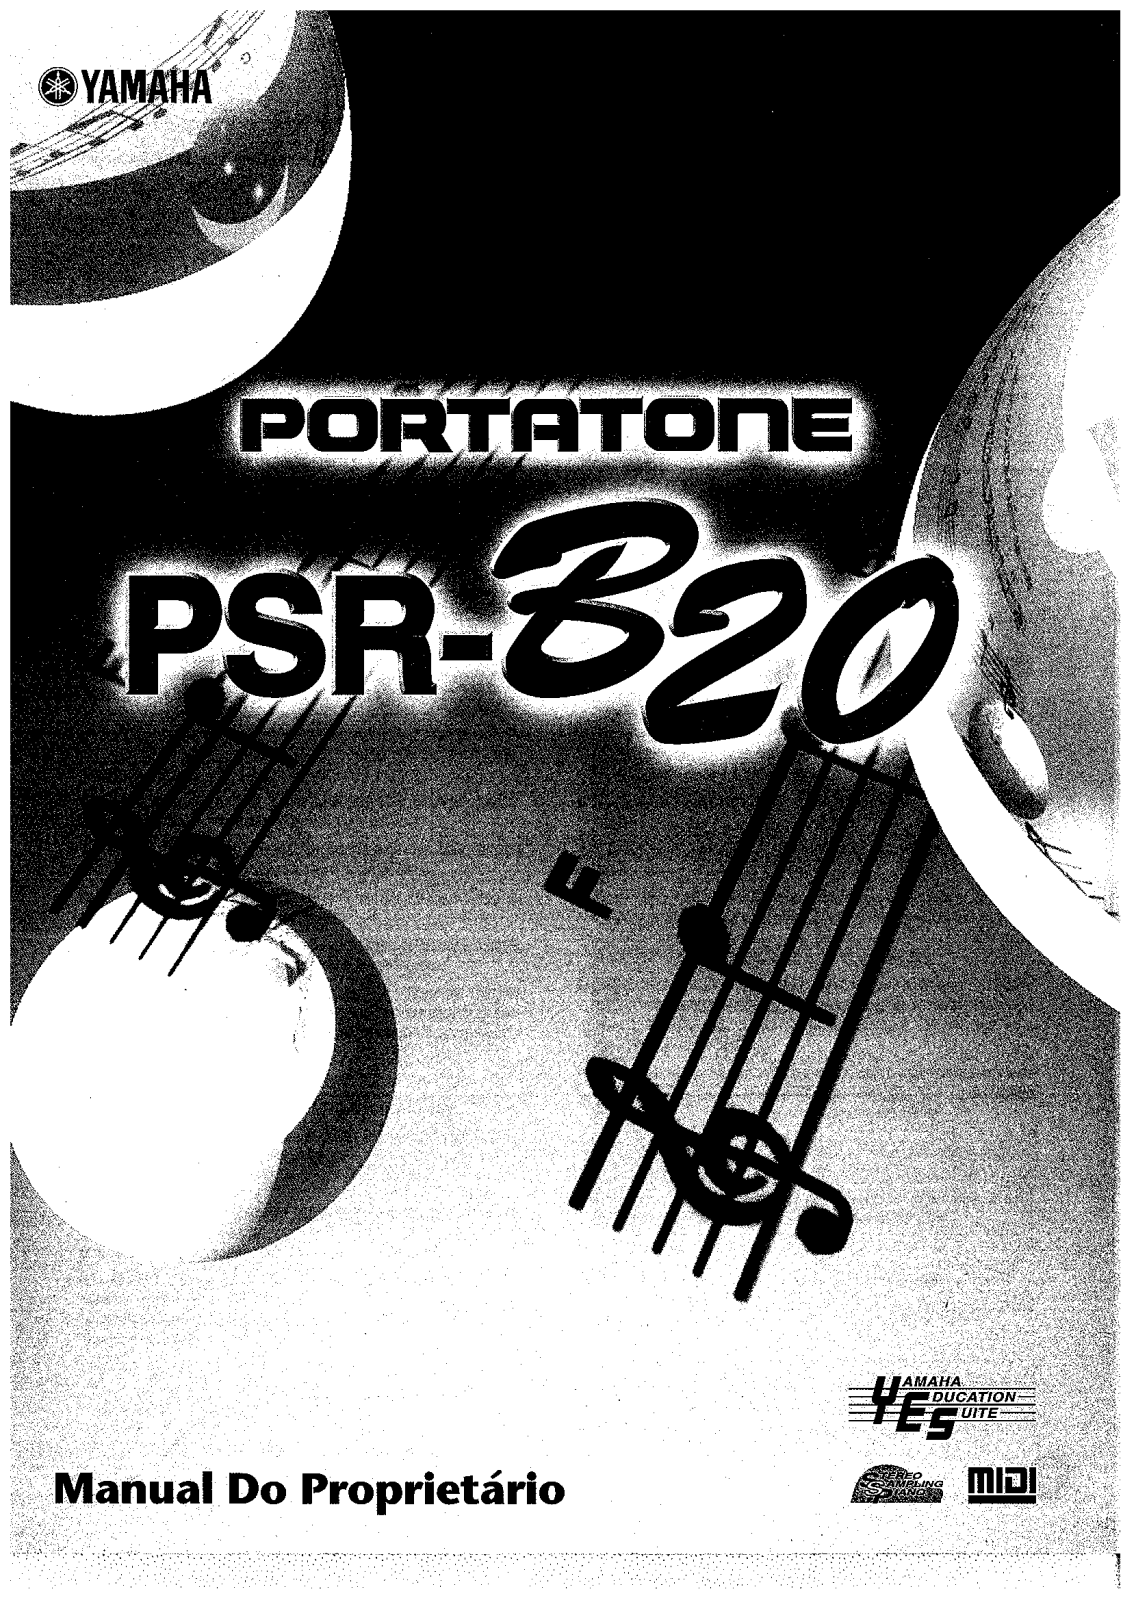 Yamaha PSR-B20 Manual